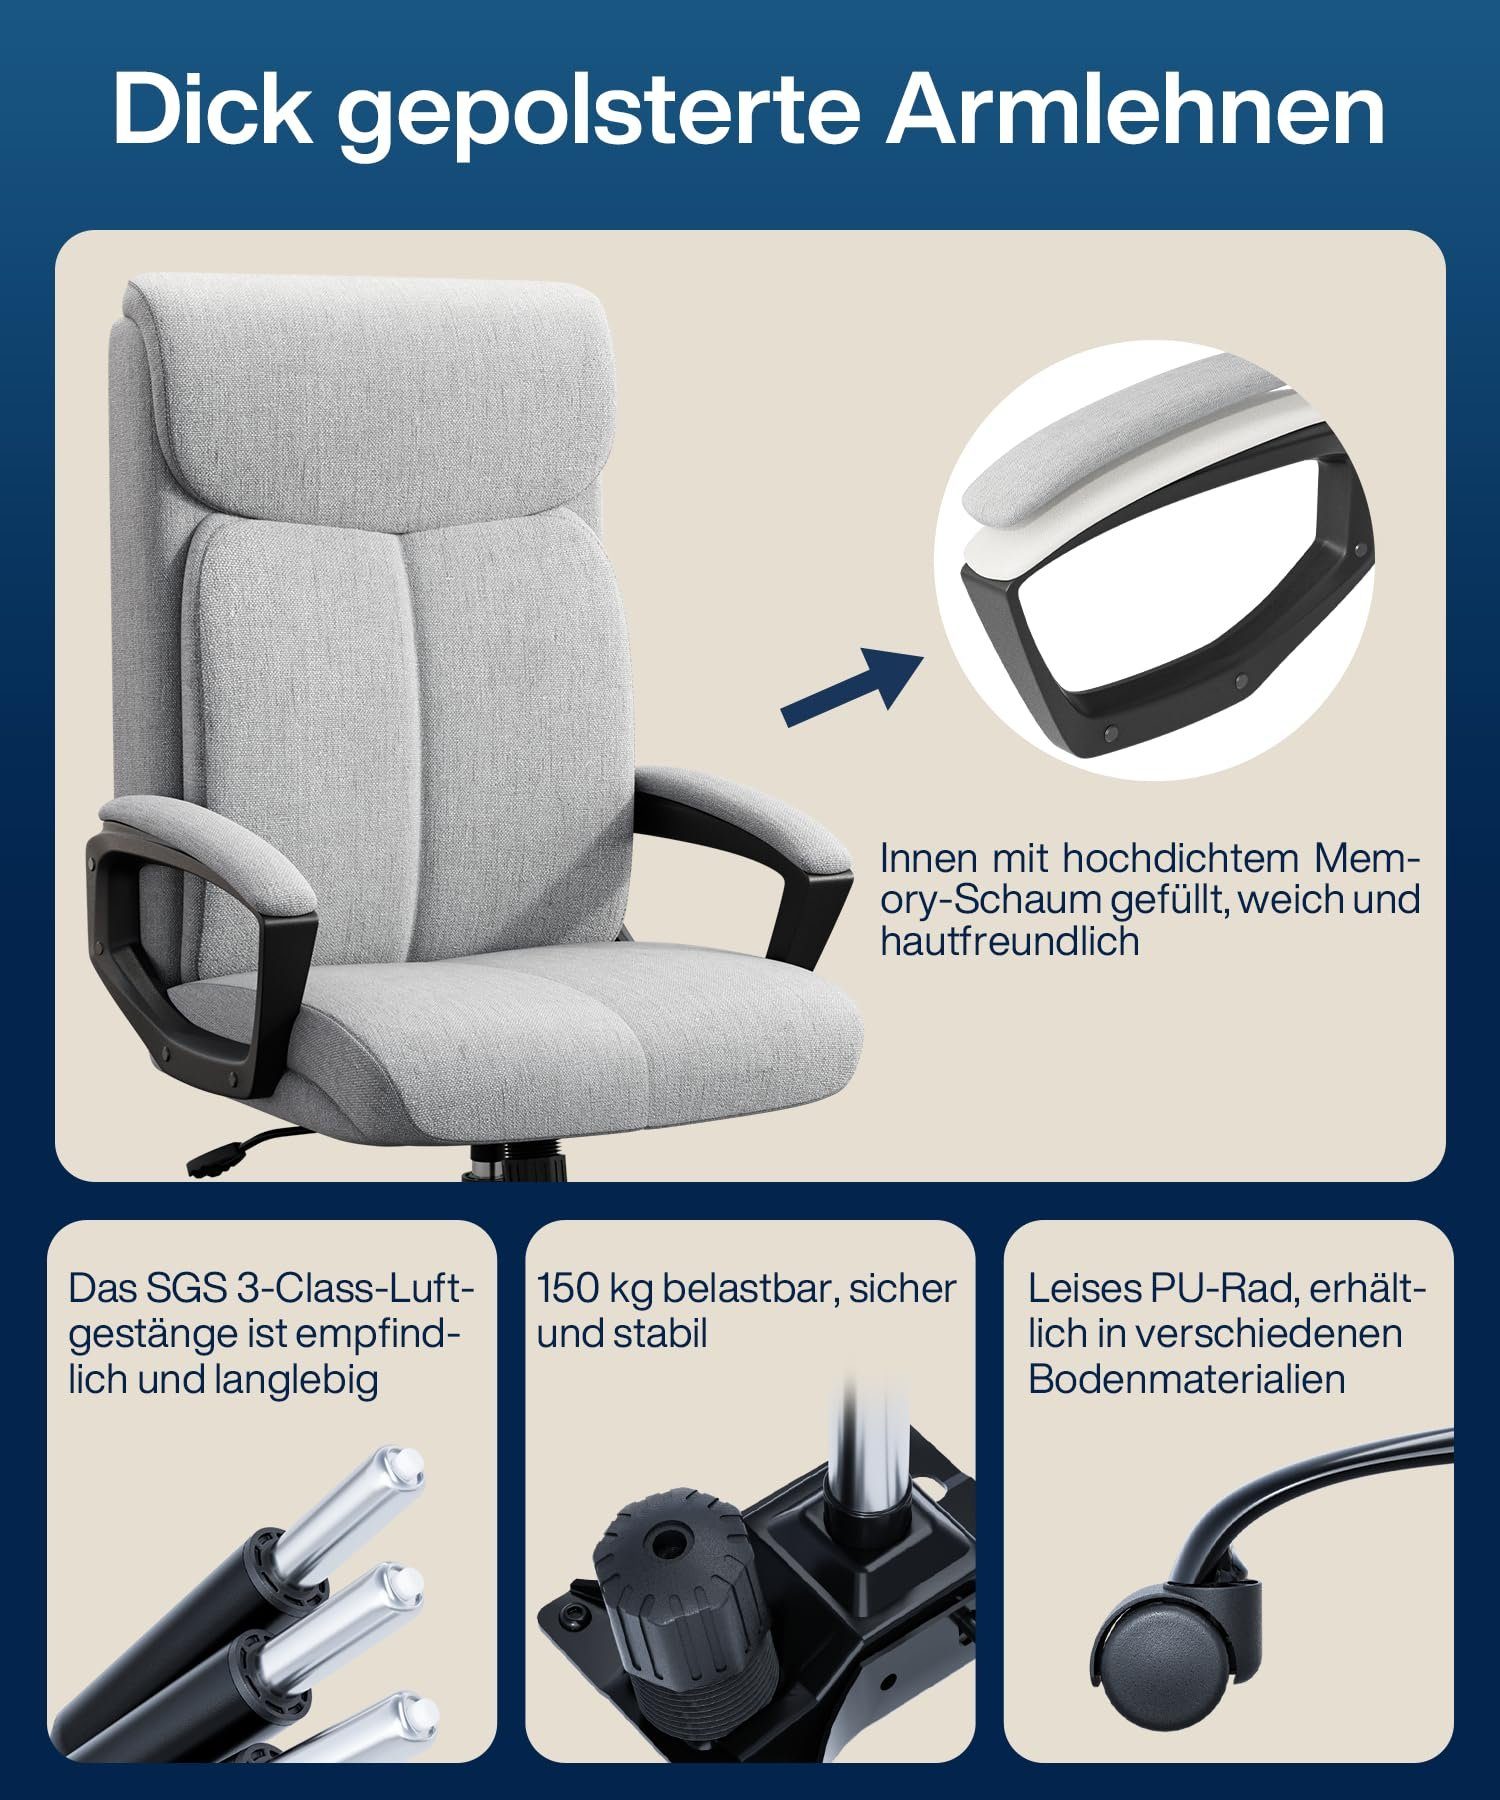 Fangqi Gaming-Stuhl Bürostuhl,360° drehbar, Rückenlehne Mit Netzgewebe mit leise Kopfstütze, Armlehnen, 90°-110° gepolsterten Grau Rollen,Hochdichtes neigbar